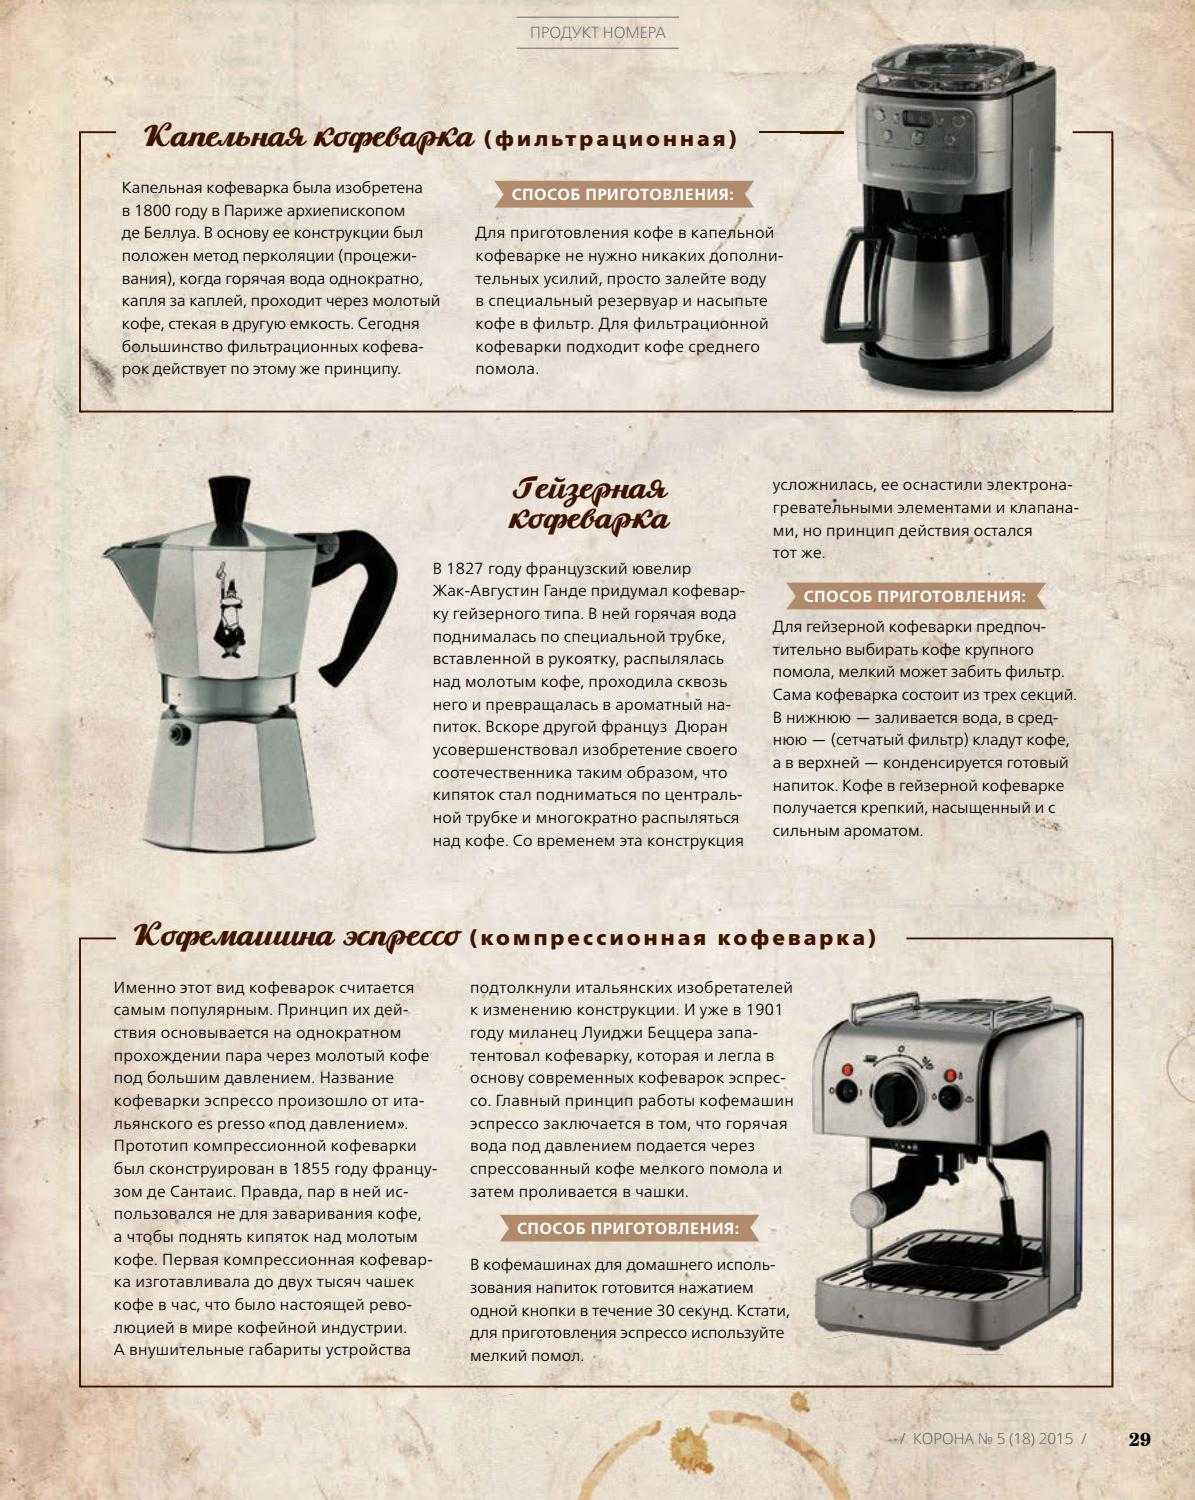 Причины плохой работы гейзерной кофеварки: частые проблемы